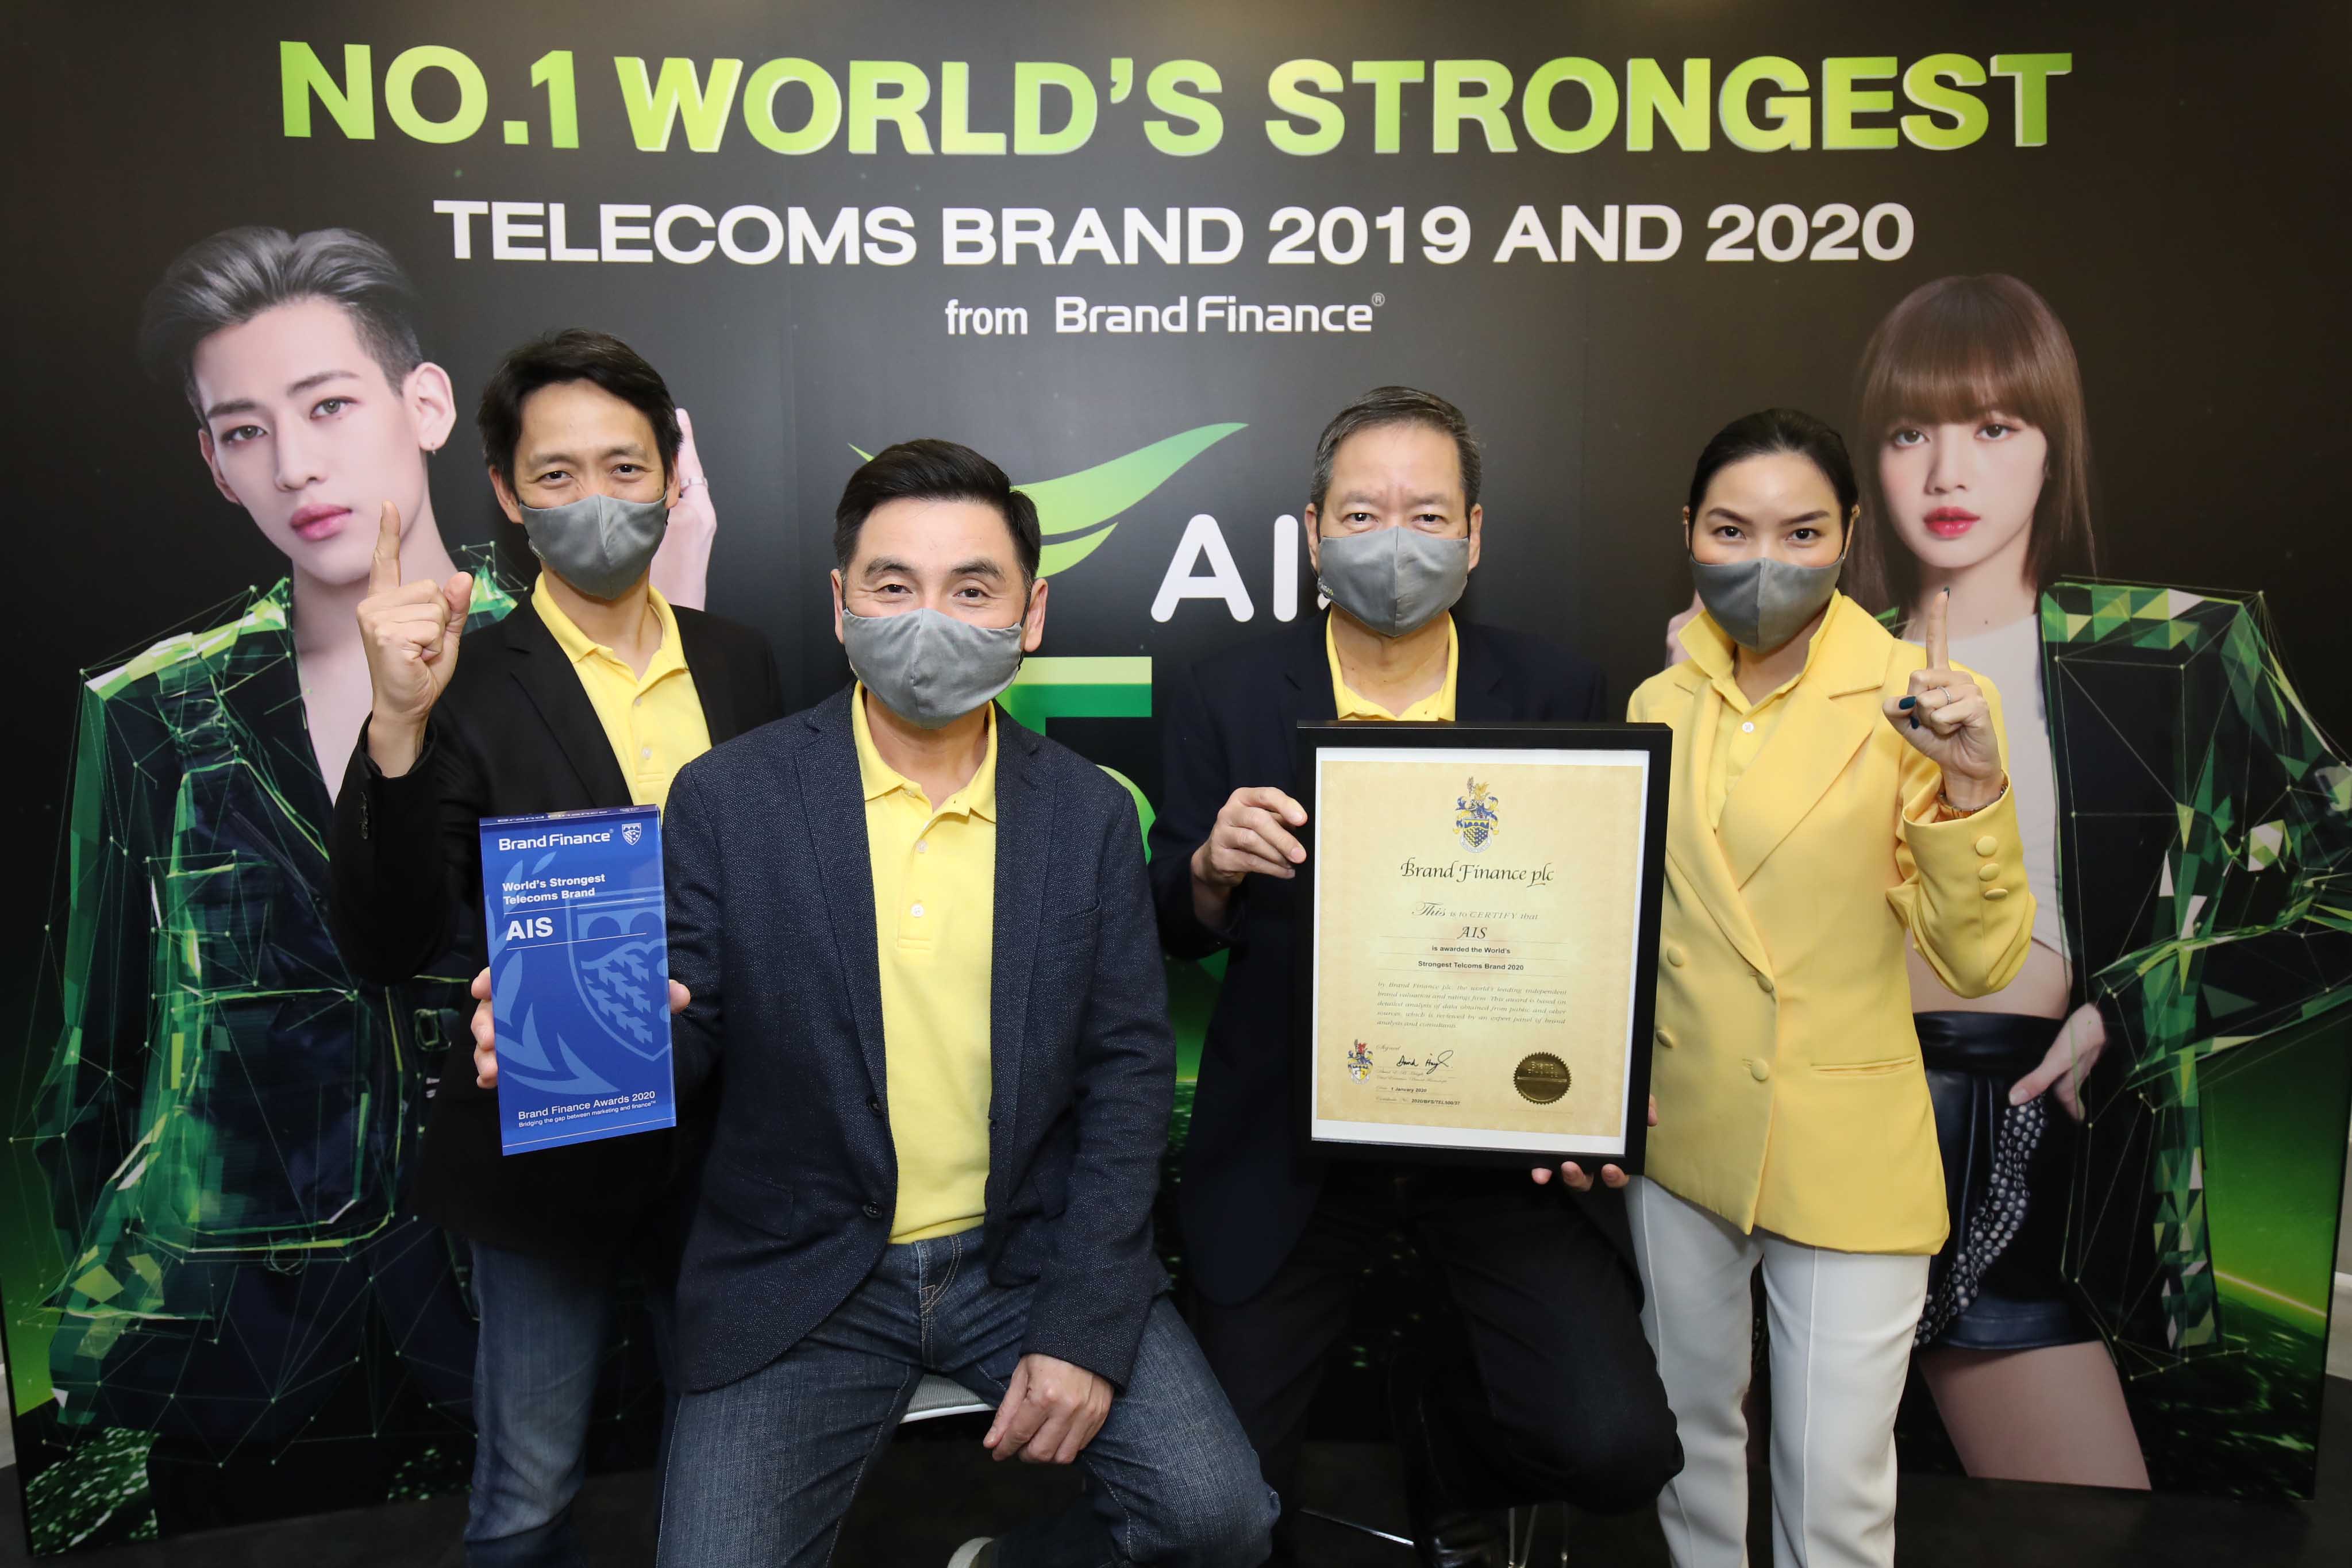 ความภาคภูมิใจของทุกคน เมื่อบริษัทของคนไทย เอไอเอส คว้ารางวัล แบรนด์โทรคมนาคมที่แข็งแกร่งที่สุดในโลก 2 ปีซ้อน